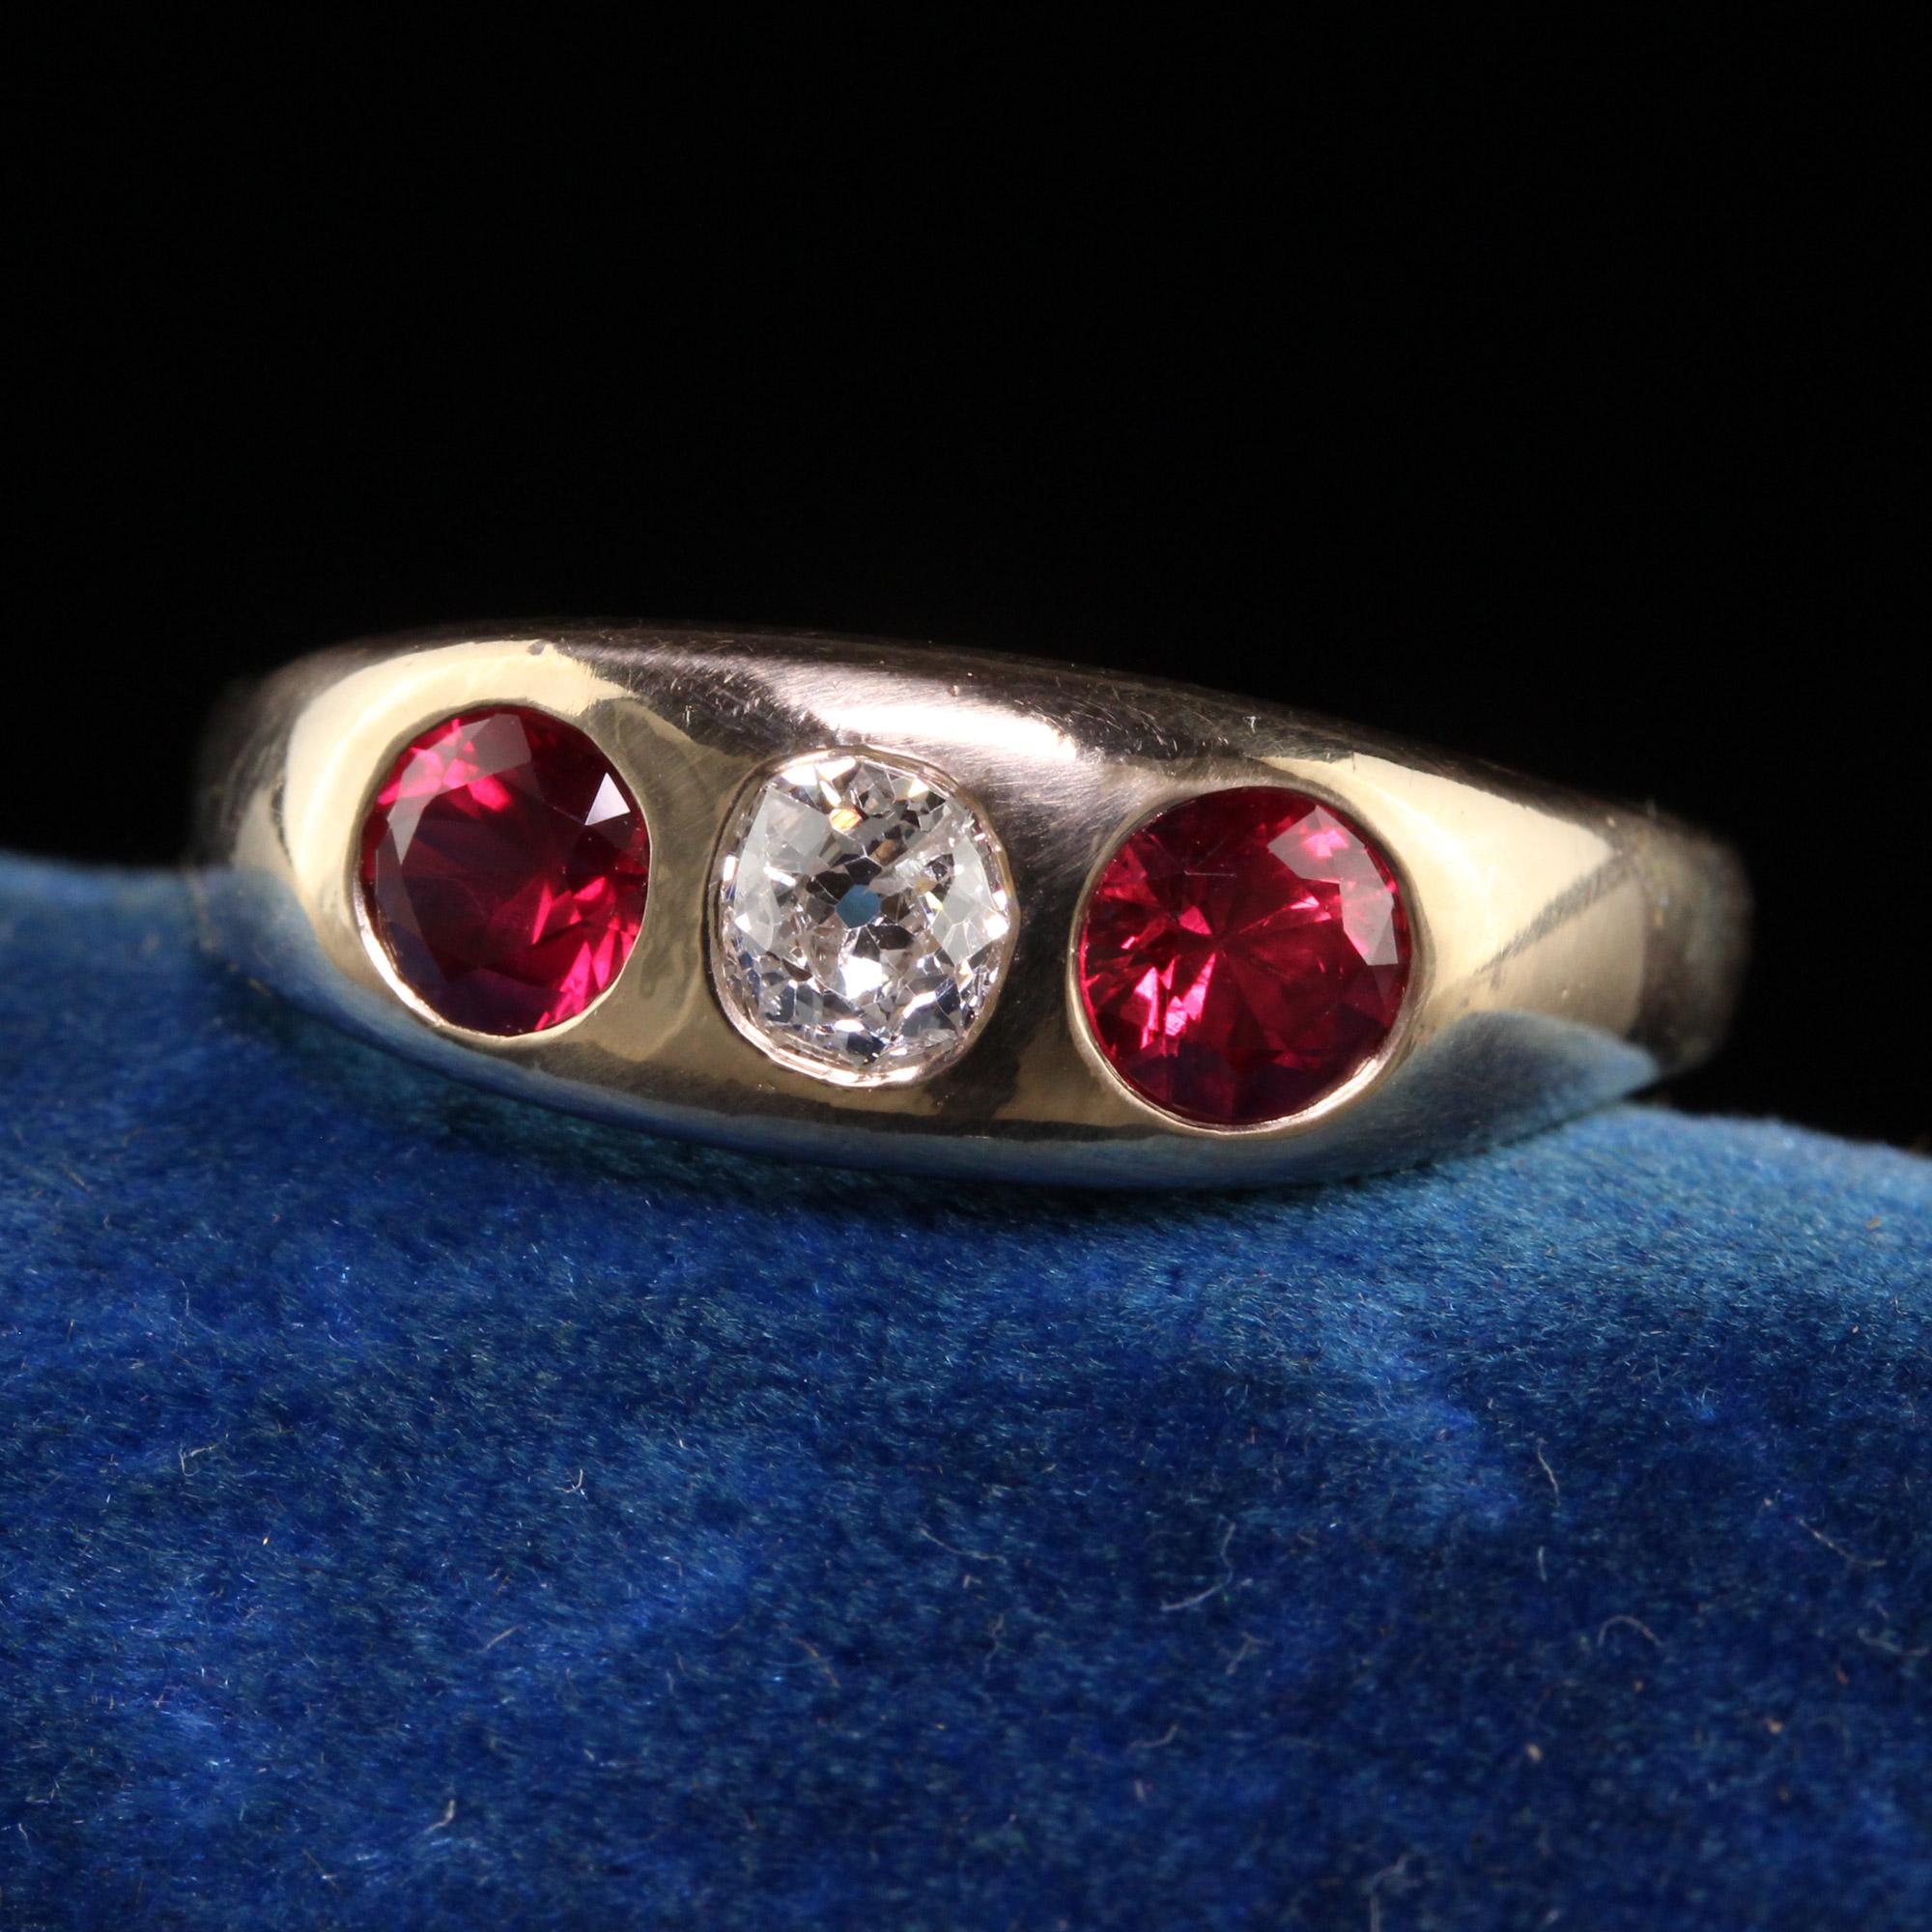 Schöne antike viktorianische 14k Gelbgold natürlichen Rubin alte Mine Diamant Flush Set Ring. Dieser wunderschöne Ring ist aus 14k Gelbgold gefertigt. In der Mitte befindet sich ein Diamant mit altem Minenschliff und zwei natürliche, lebhafte rote